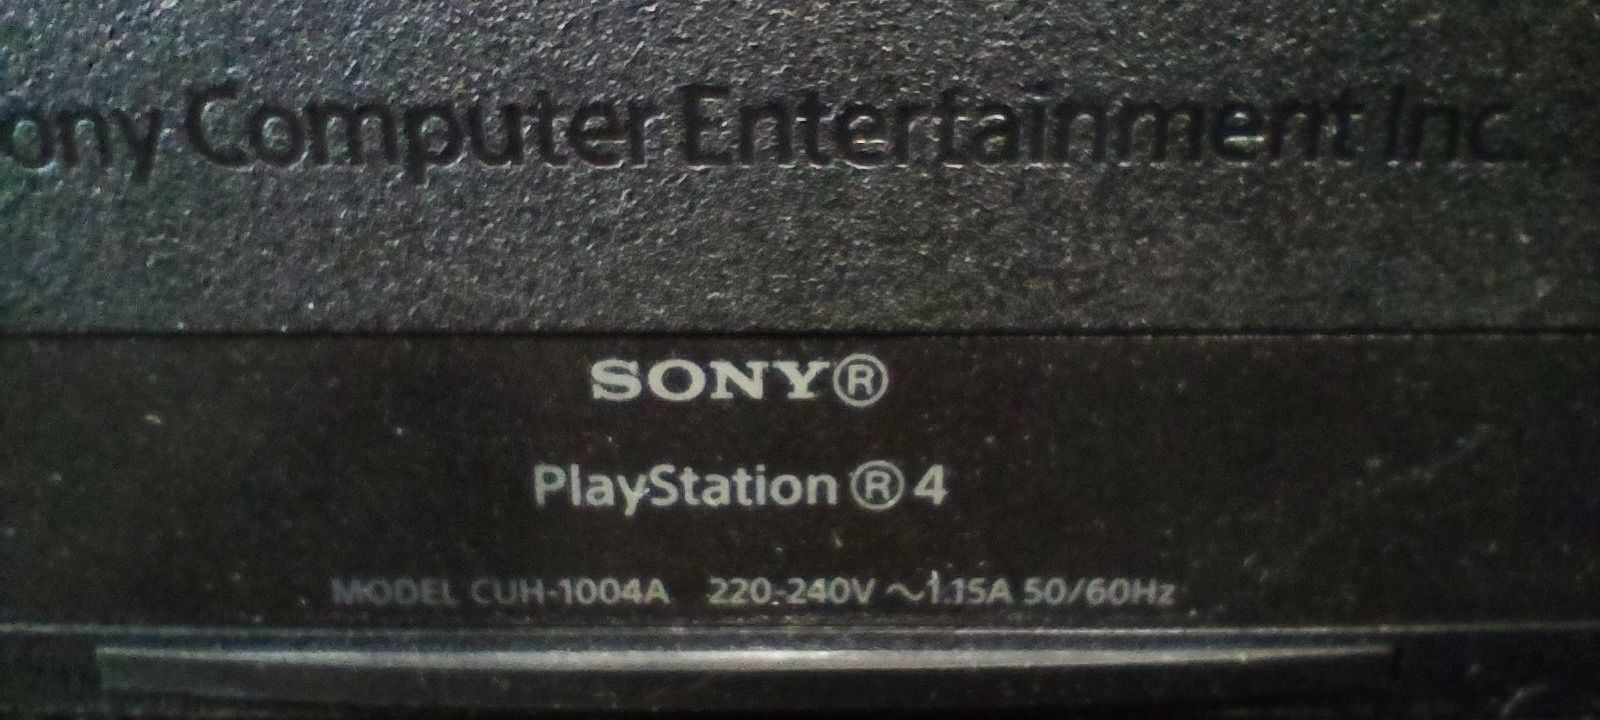 Продам PlayStation 4 Fat 512gb. + 512gb внешний
Пользовался несколько